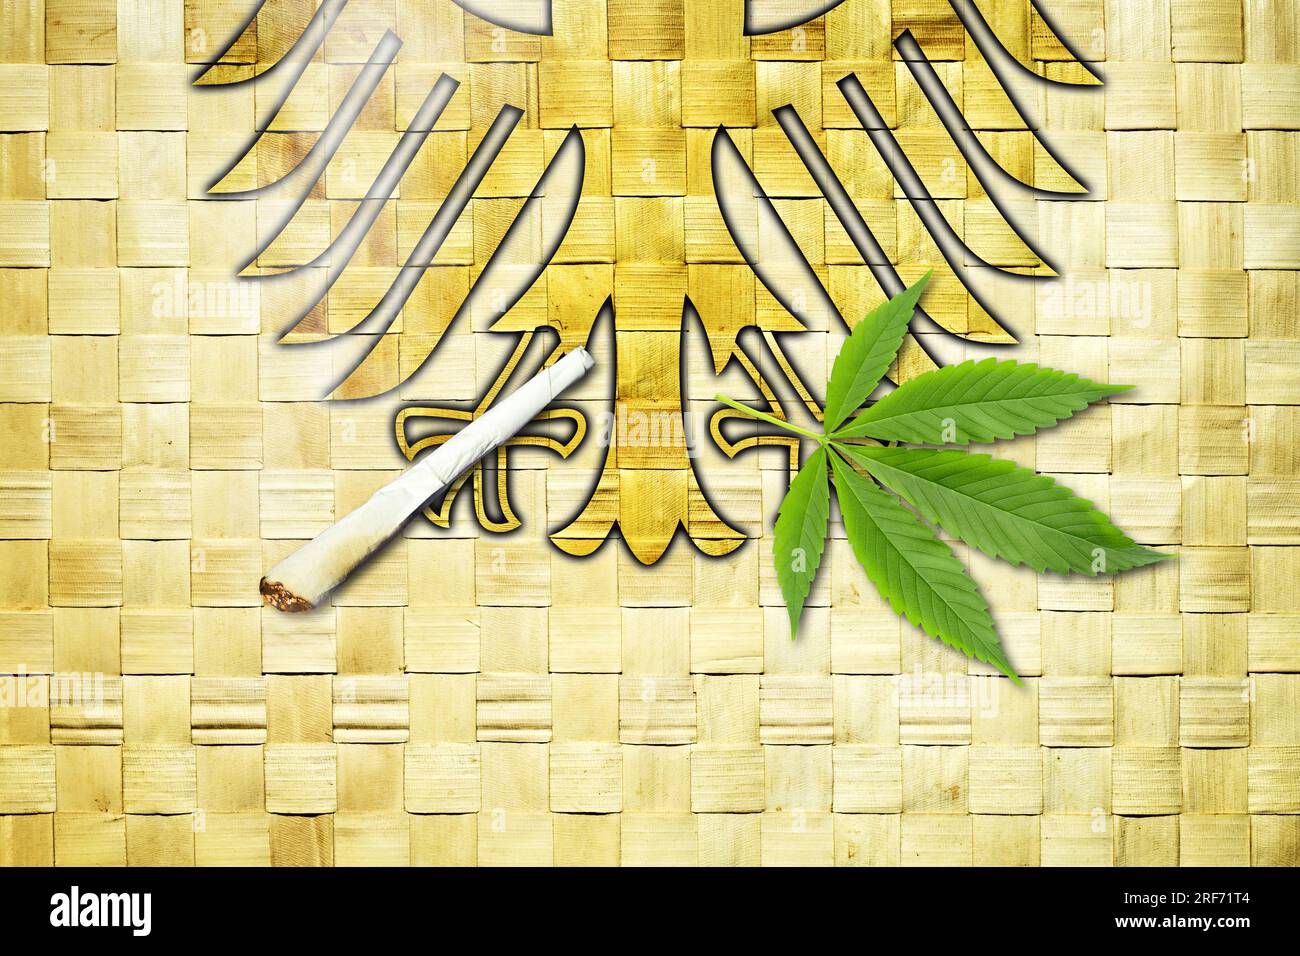 FOTOMONTAGE, Deutscher Bundesadler mit Joint und Cannabisblatt, Symbolfoso Cannabis-Legalisierung Foto Stock